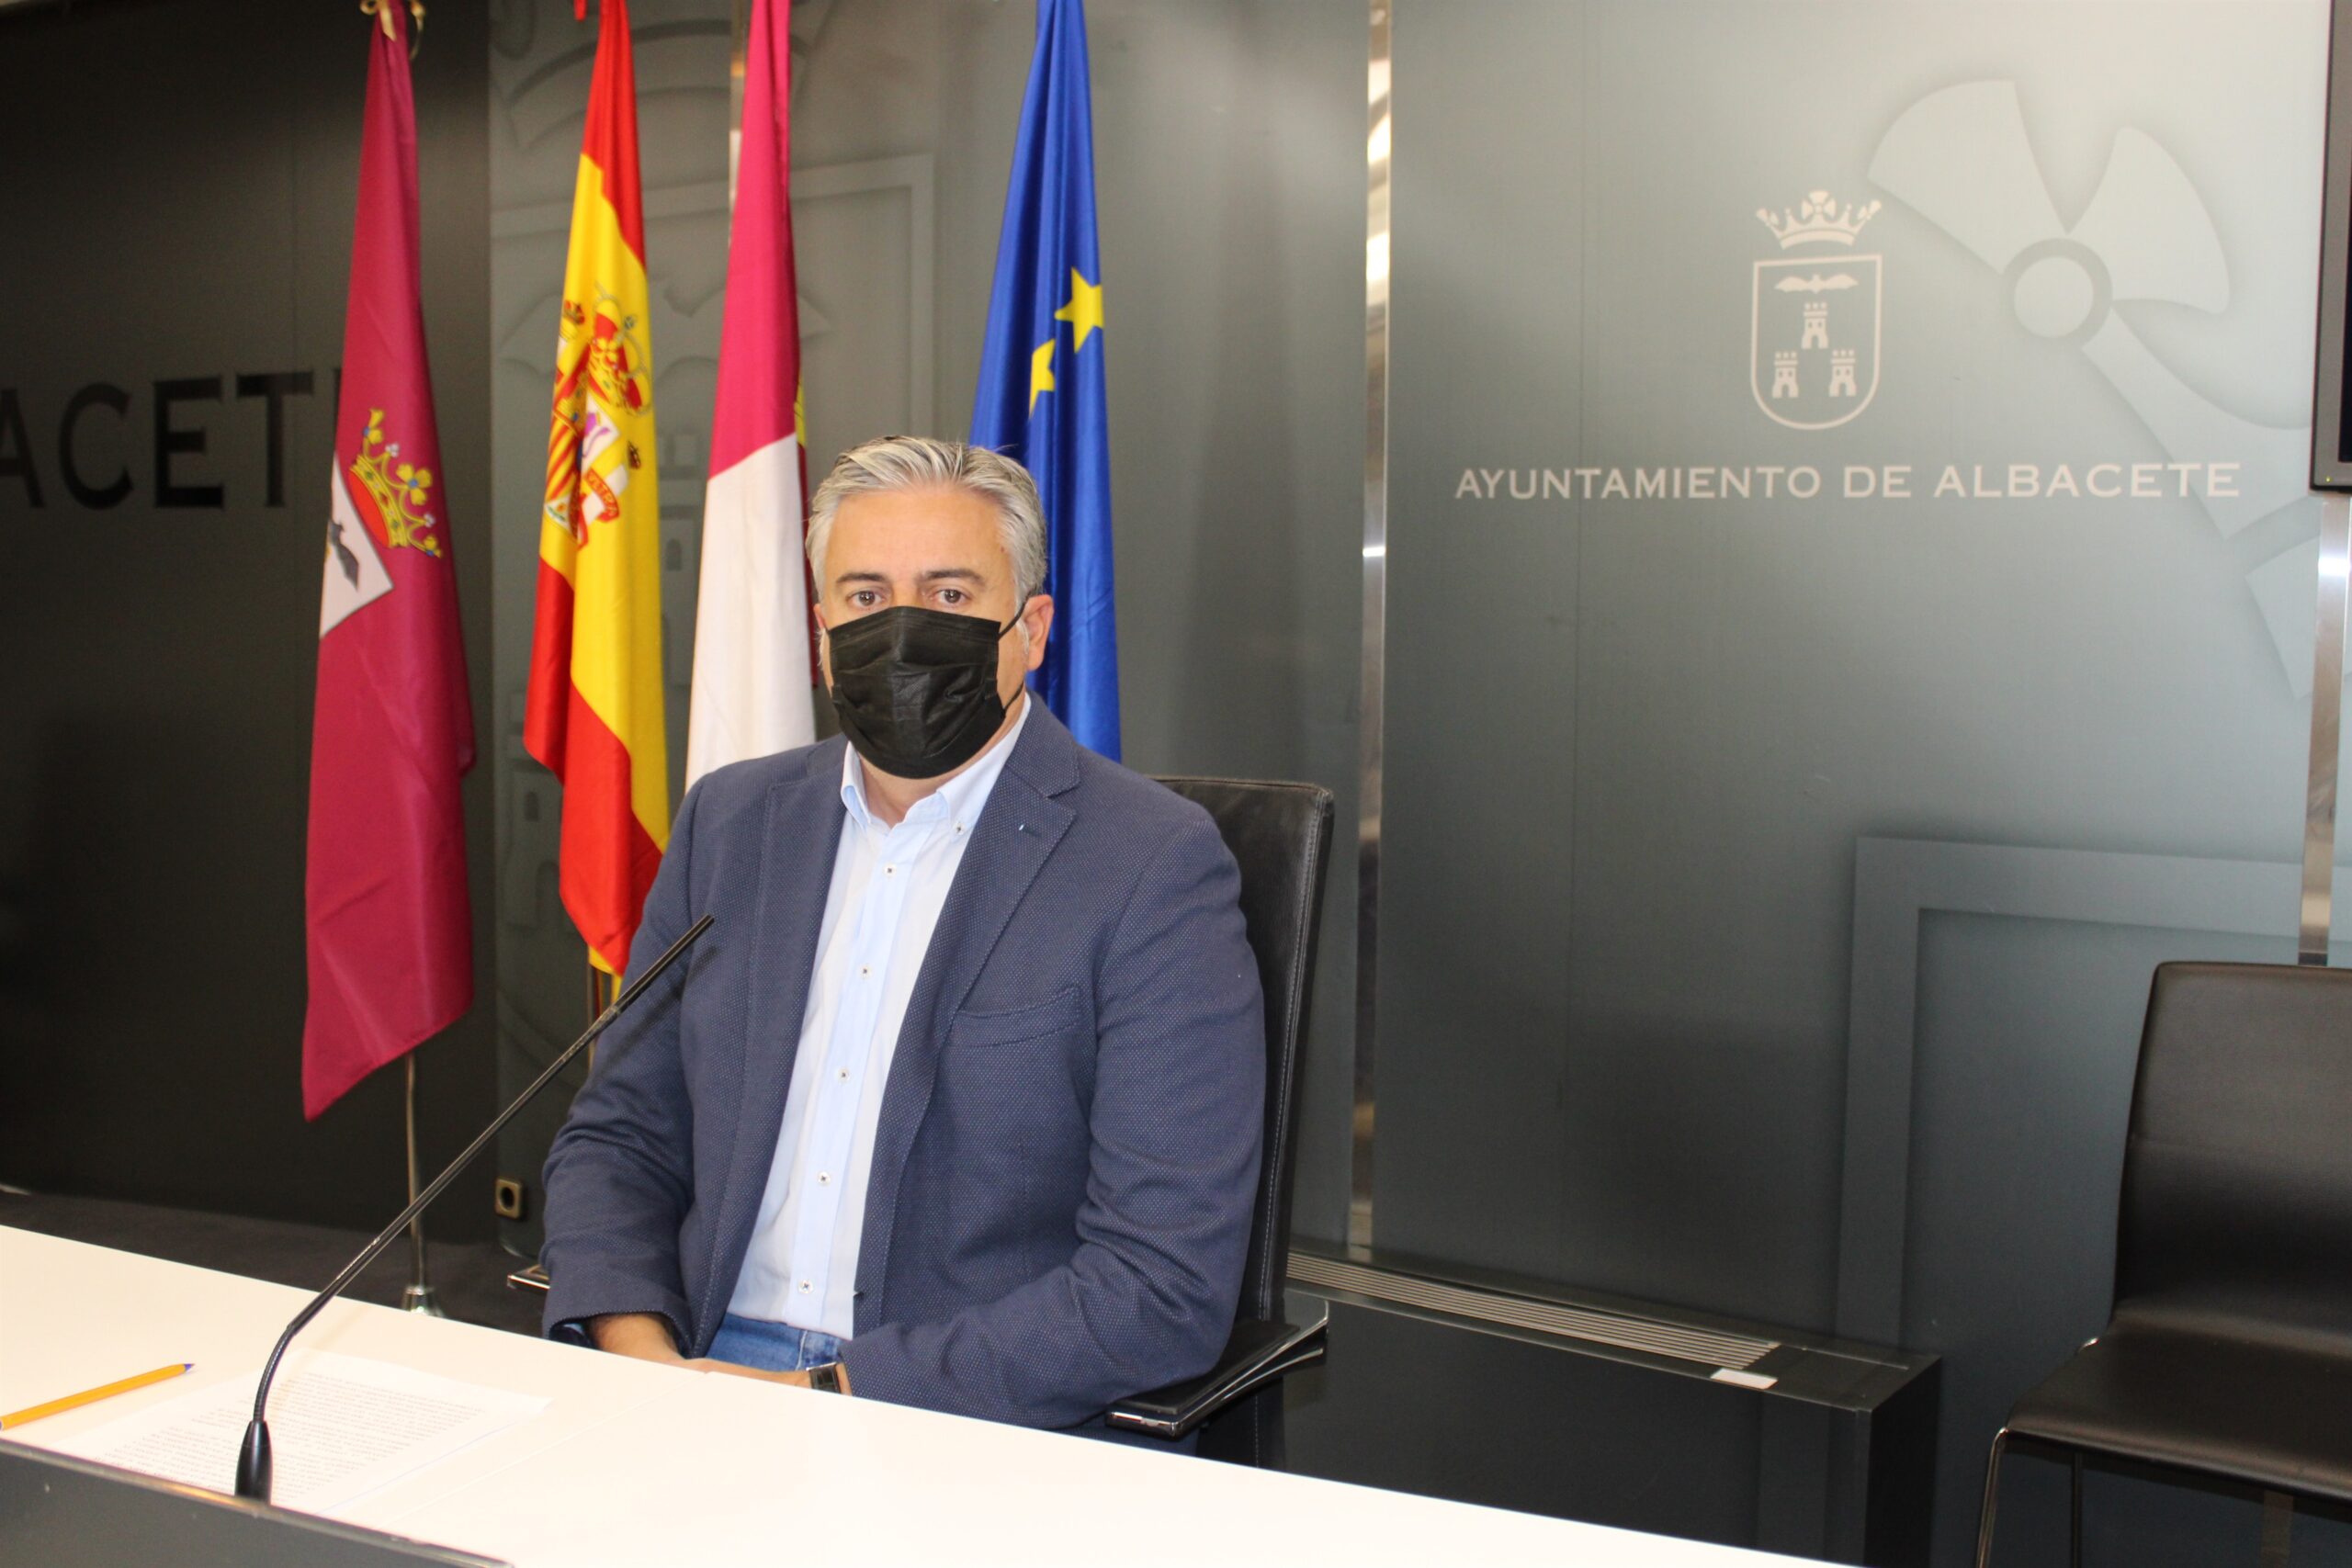 Piden la dimisión de Casañ "por irregularidades" en Depósito de la Fiesta del Árbol y la Oficina de Turismo en Albacete